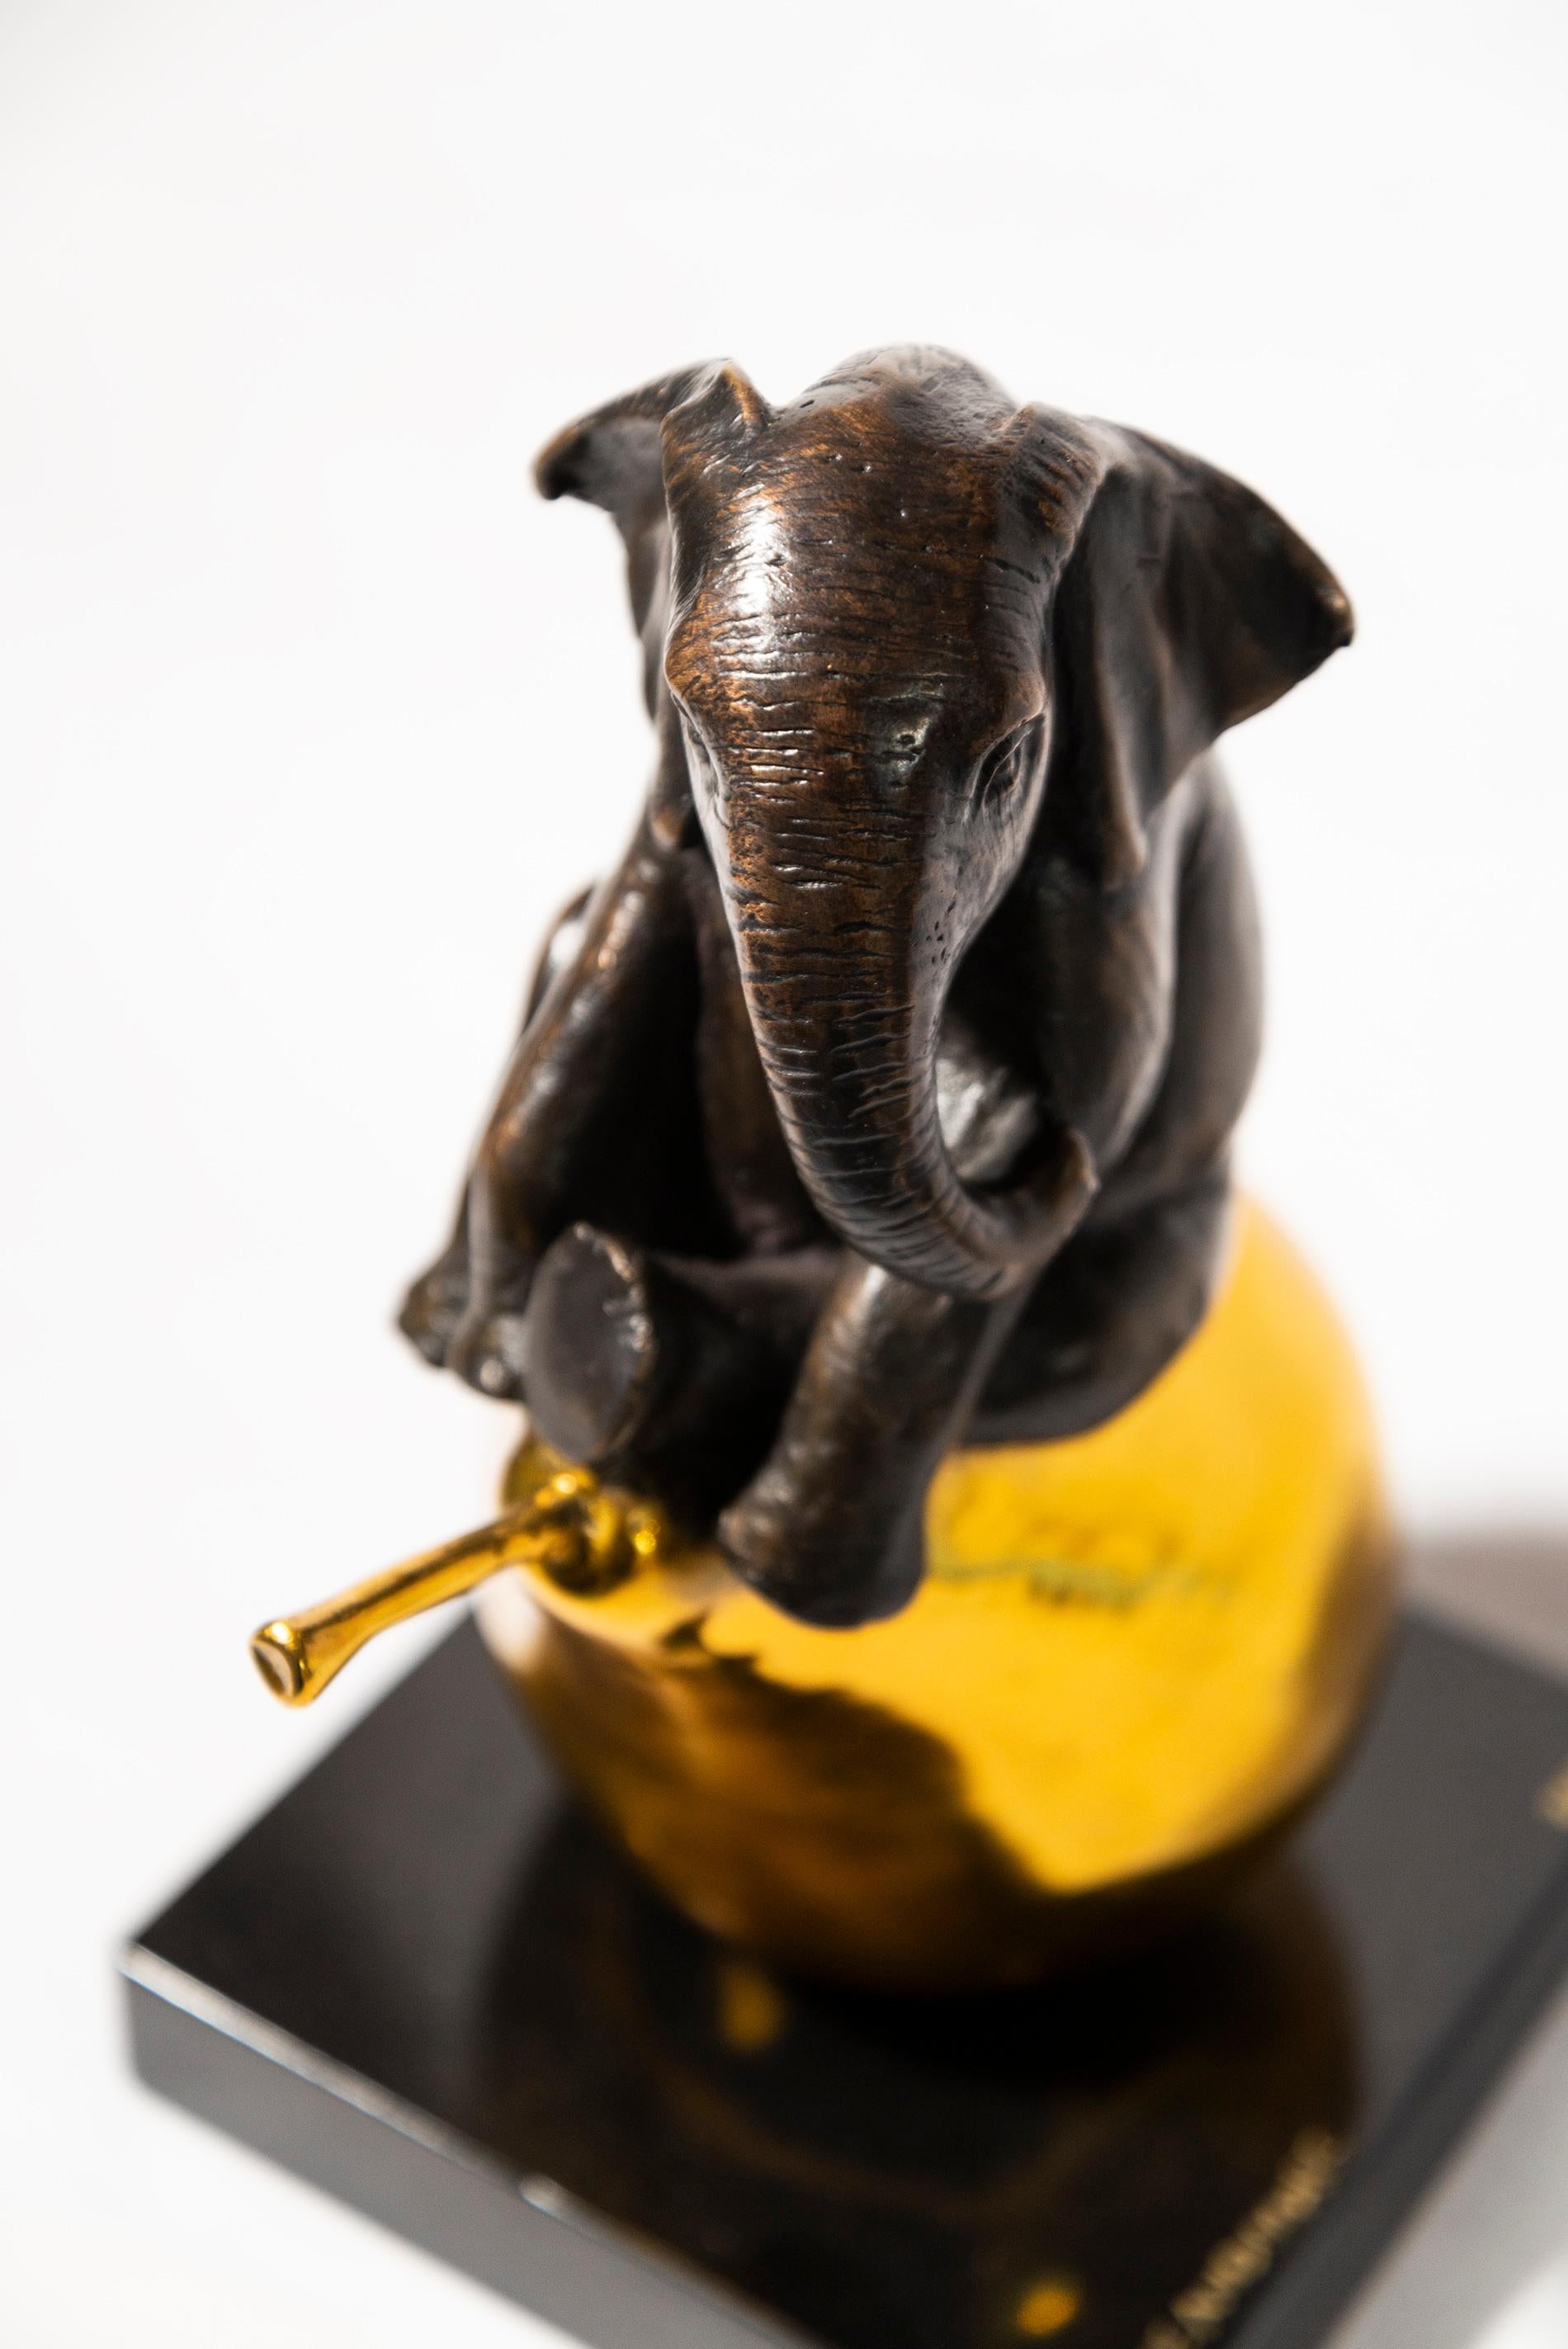 Der edle afrikanische Riese - der Elefant - ist seit langem ein beliebtes Motiv für die bezaubernde Kunst von Gillie and Marc. Gillie wuchs in Sambia auf, wo sie die Schönheit und Erhabenheit der Tierwelt zu schätzen wusste. Als Kind war sie